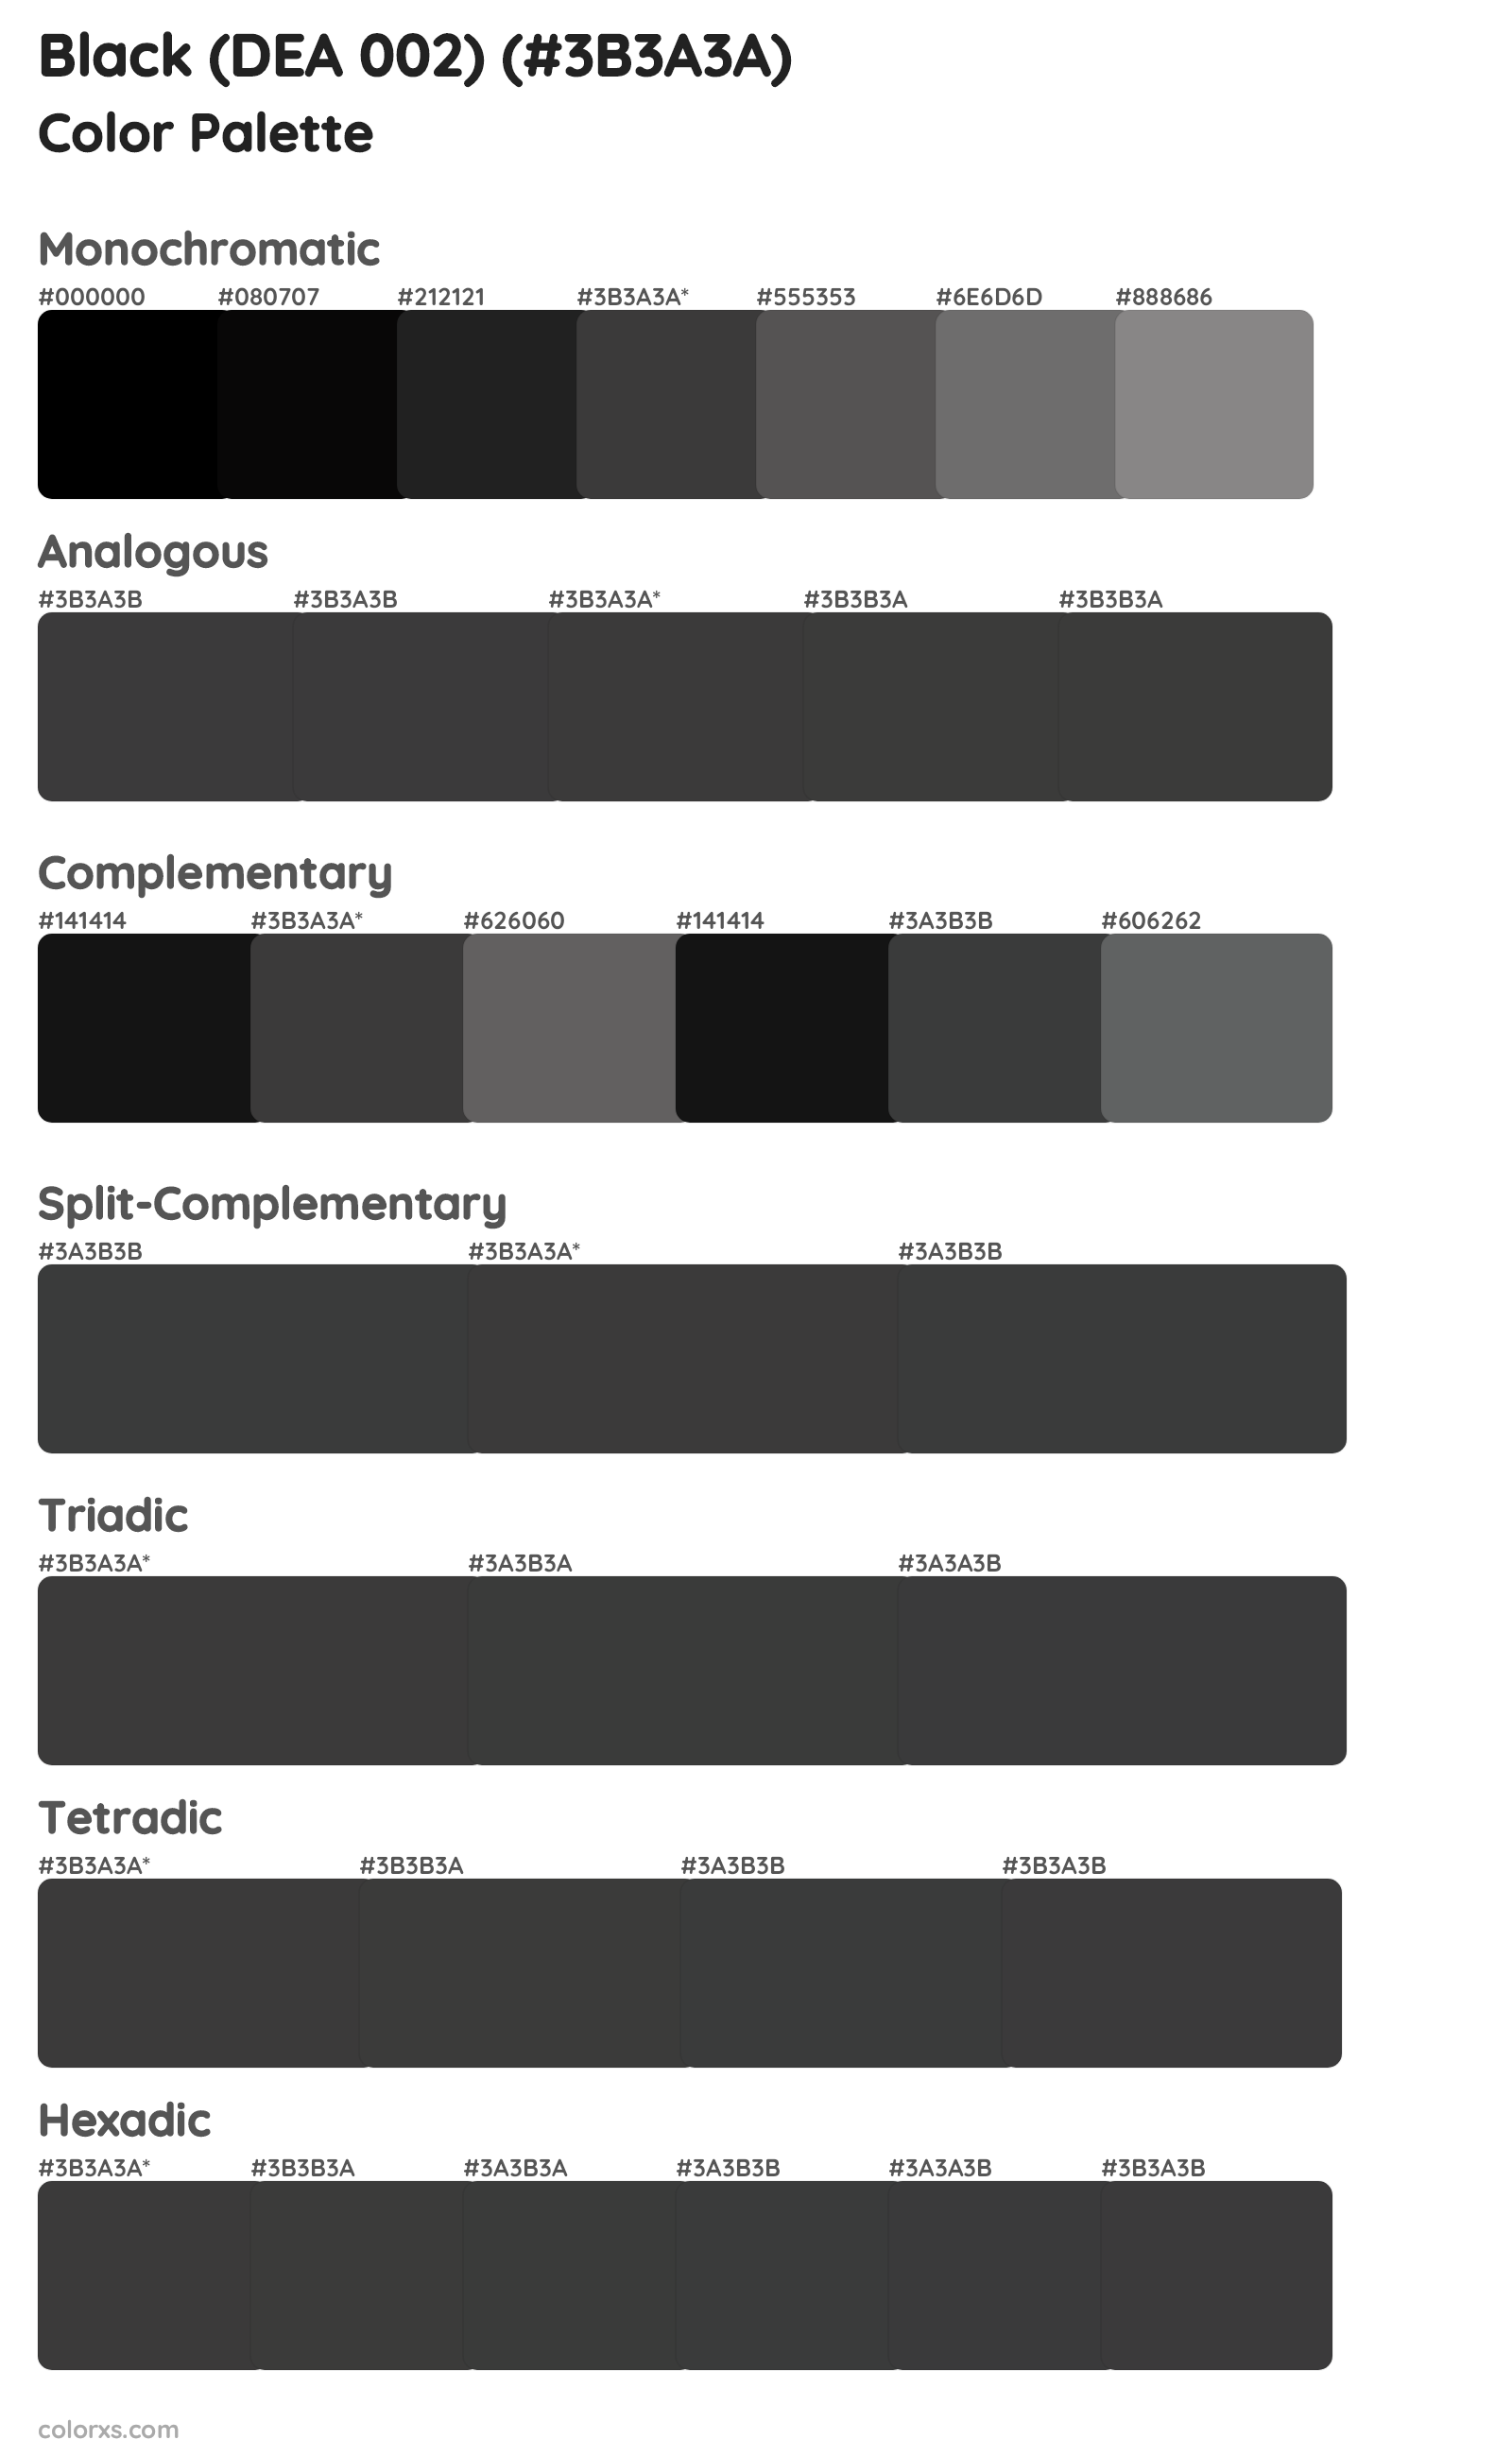 Black (DEA 002) Color Scheme Palettes